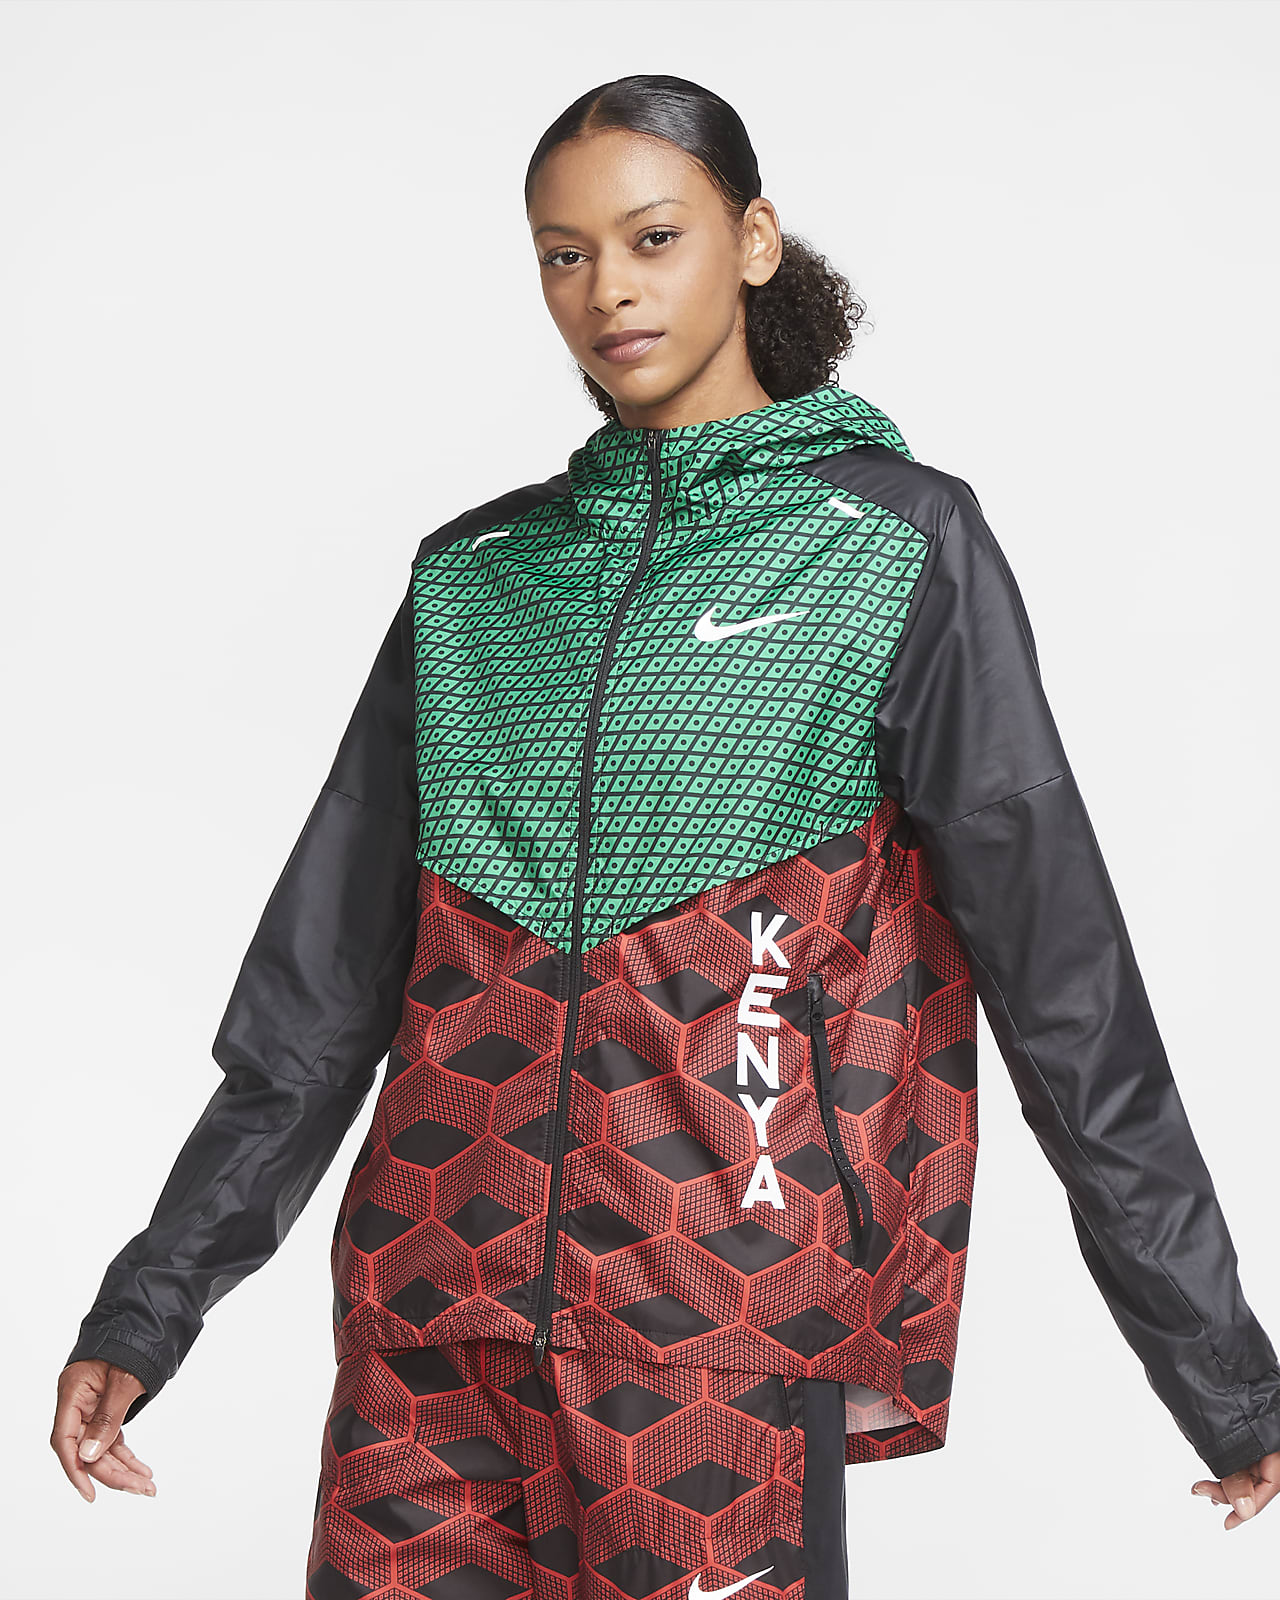 Nike Team Kenya Shieldrunner Hardloopjack